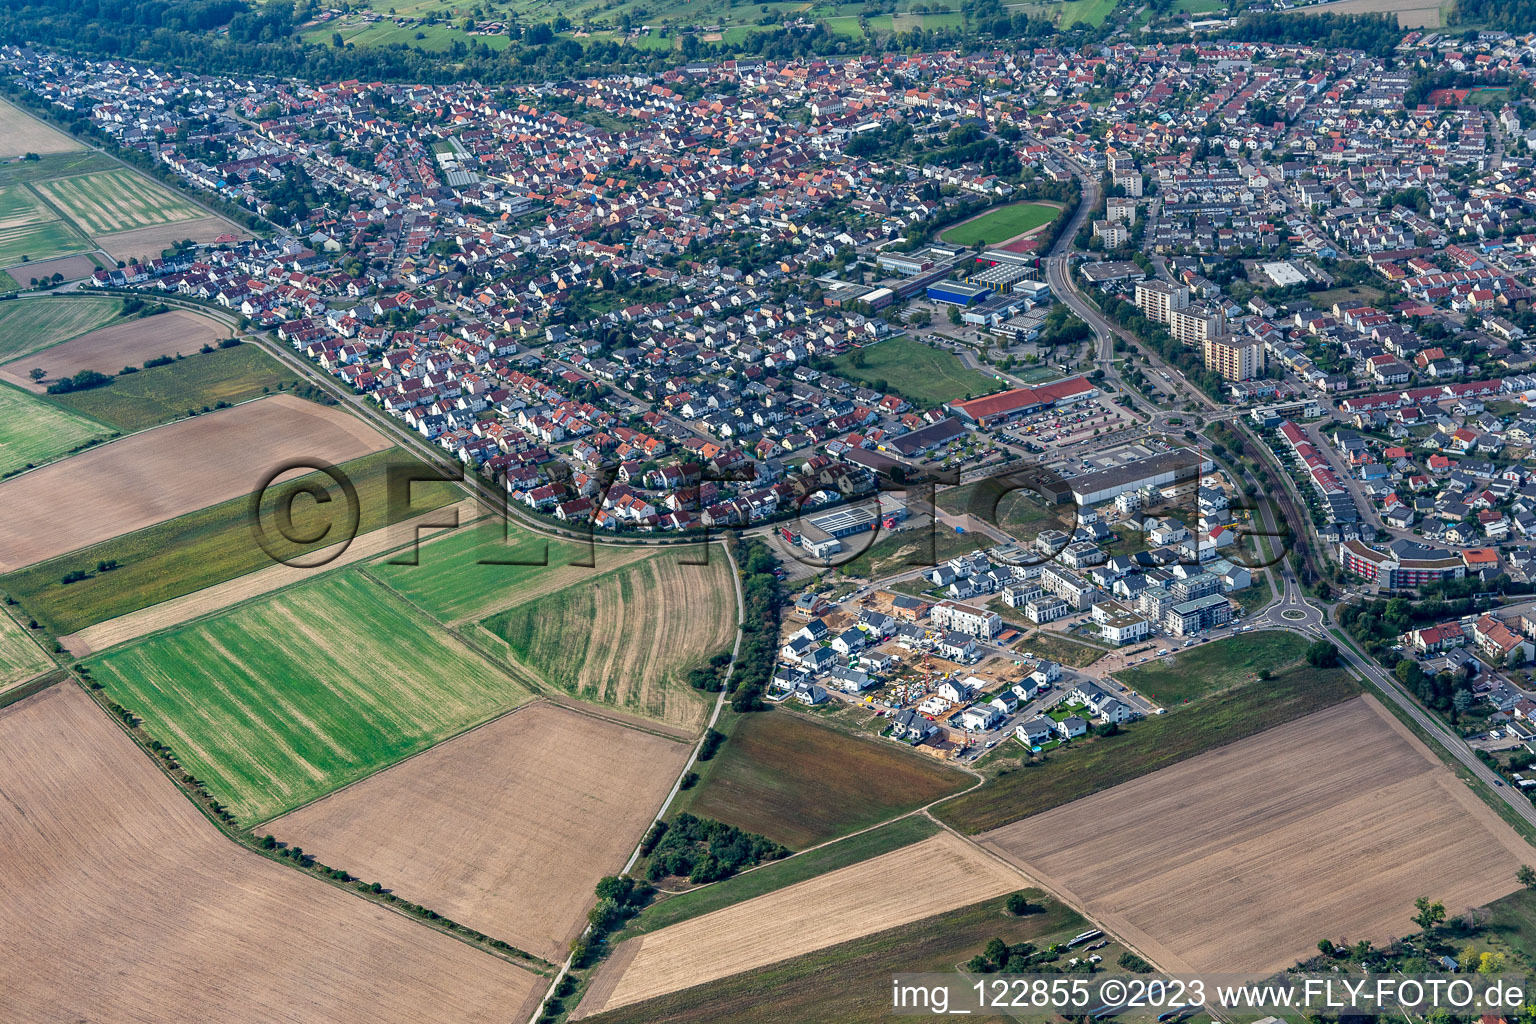 Aerial view of Quarter 2020 Biegen-Durlacher Weg development area in the district Hochstetten in Linkenheim-Hochstetten in the state Baden-Wuerttemberg, Germany